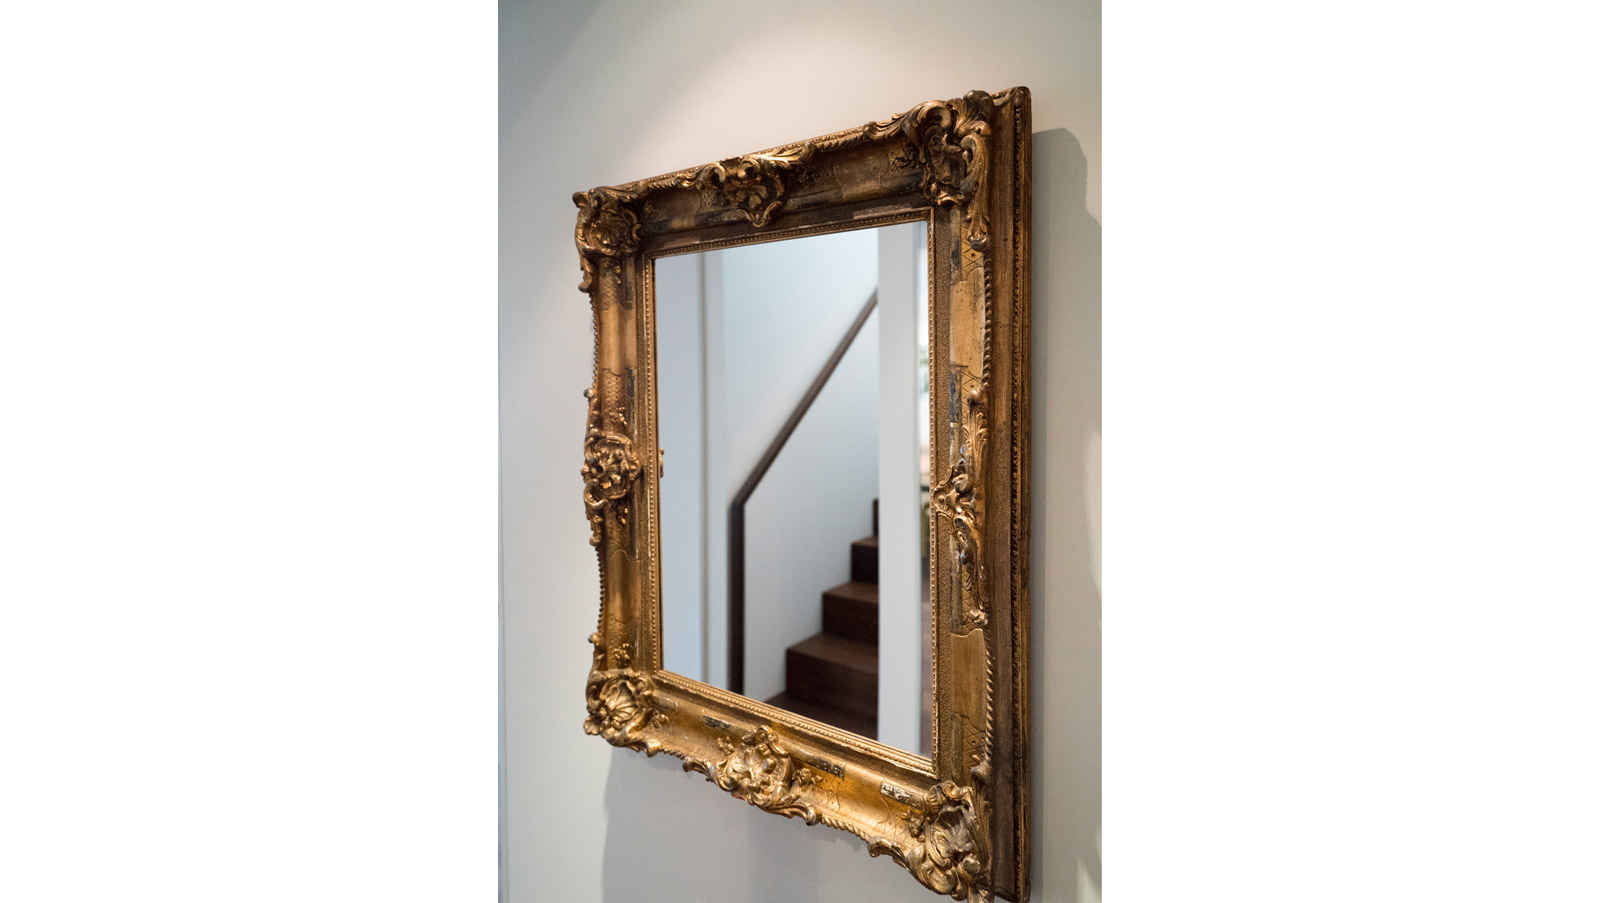 Spiegelung der Treppe im Barockspiegel